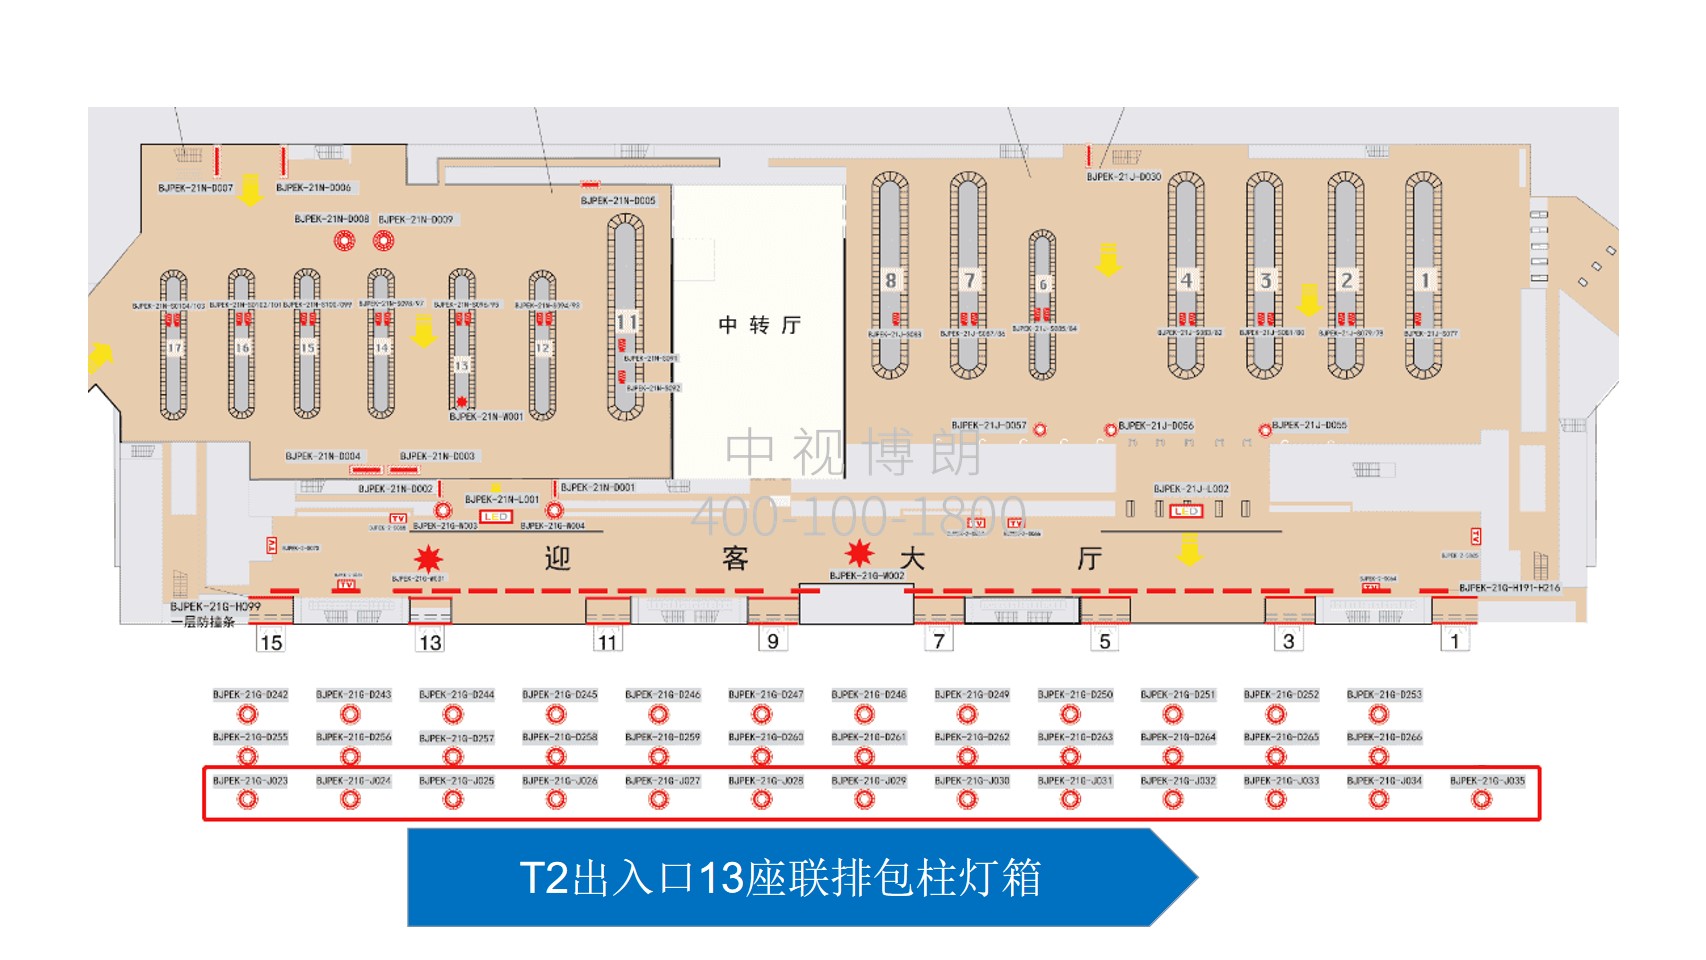 北京首都机场广告-T2 Entrance and Exit 13 Row Packed Column Light Boxes位置图